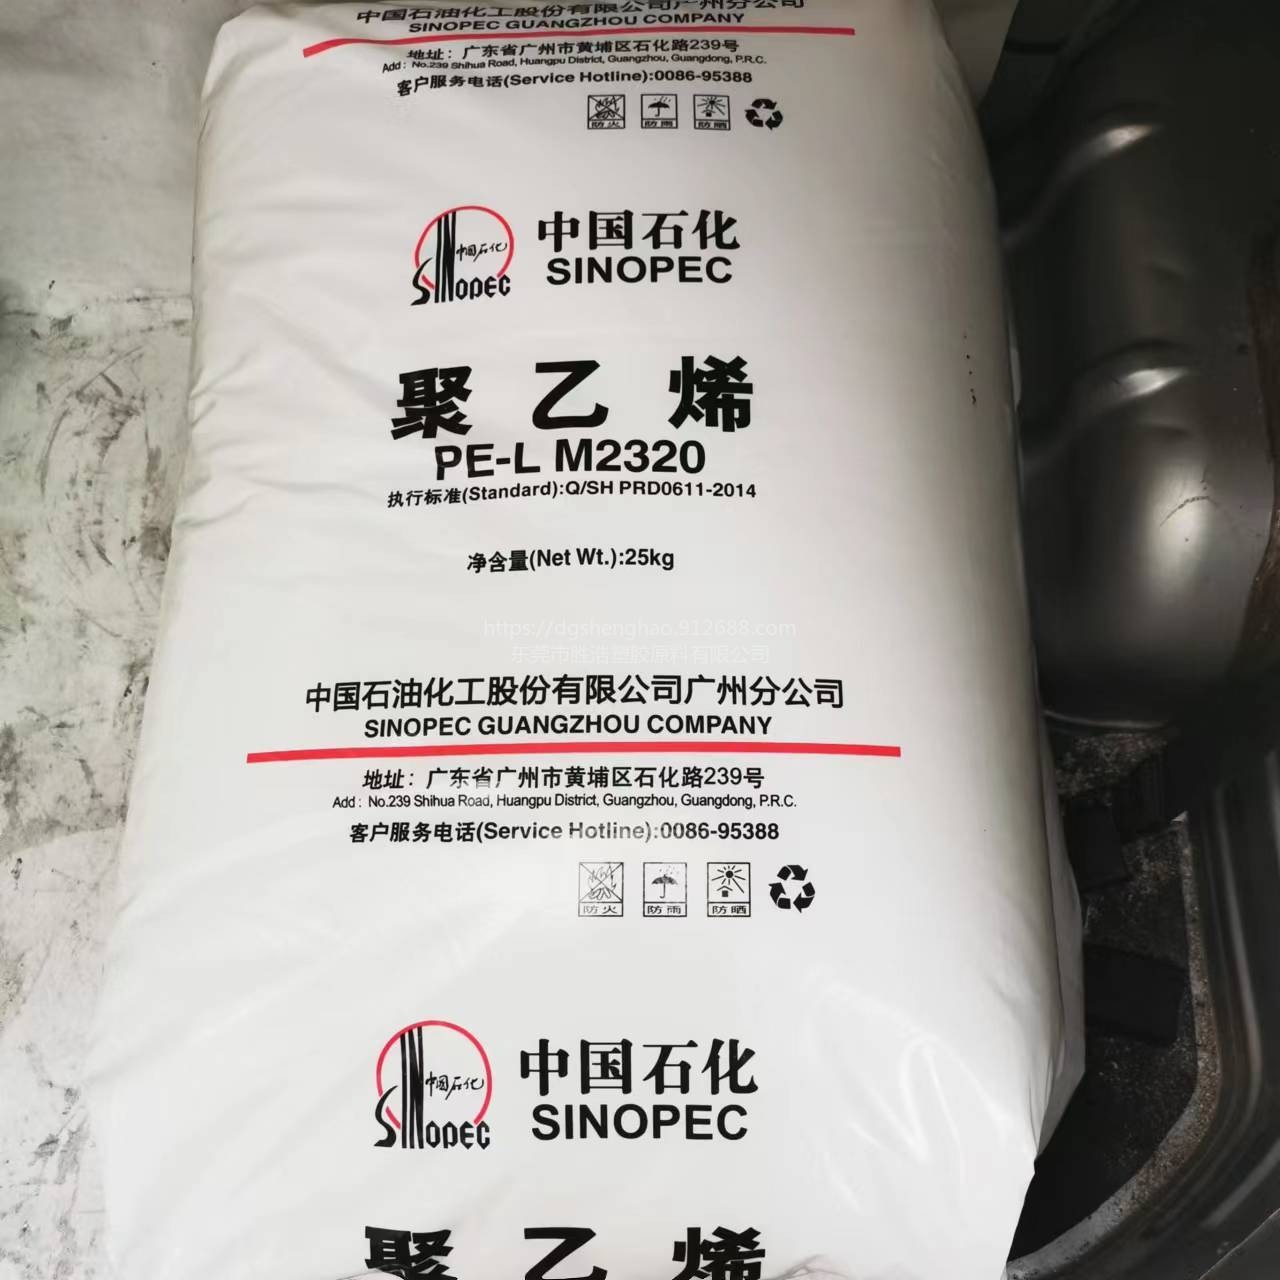 中国石化 聚乙烯  PE-L M2320 广州石化LLDPE  20个熔脂 旧型号FDA-7144  适用于注塑用品